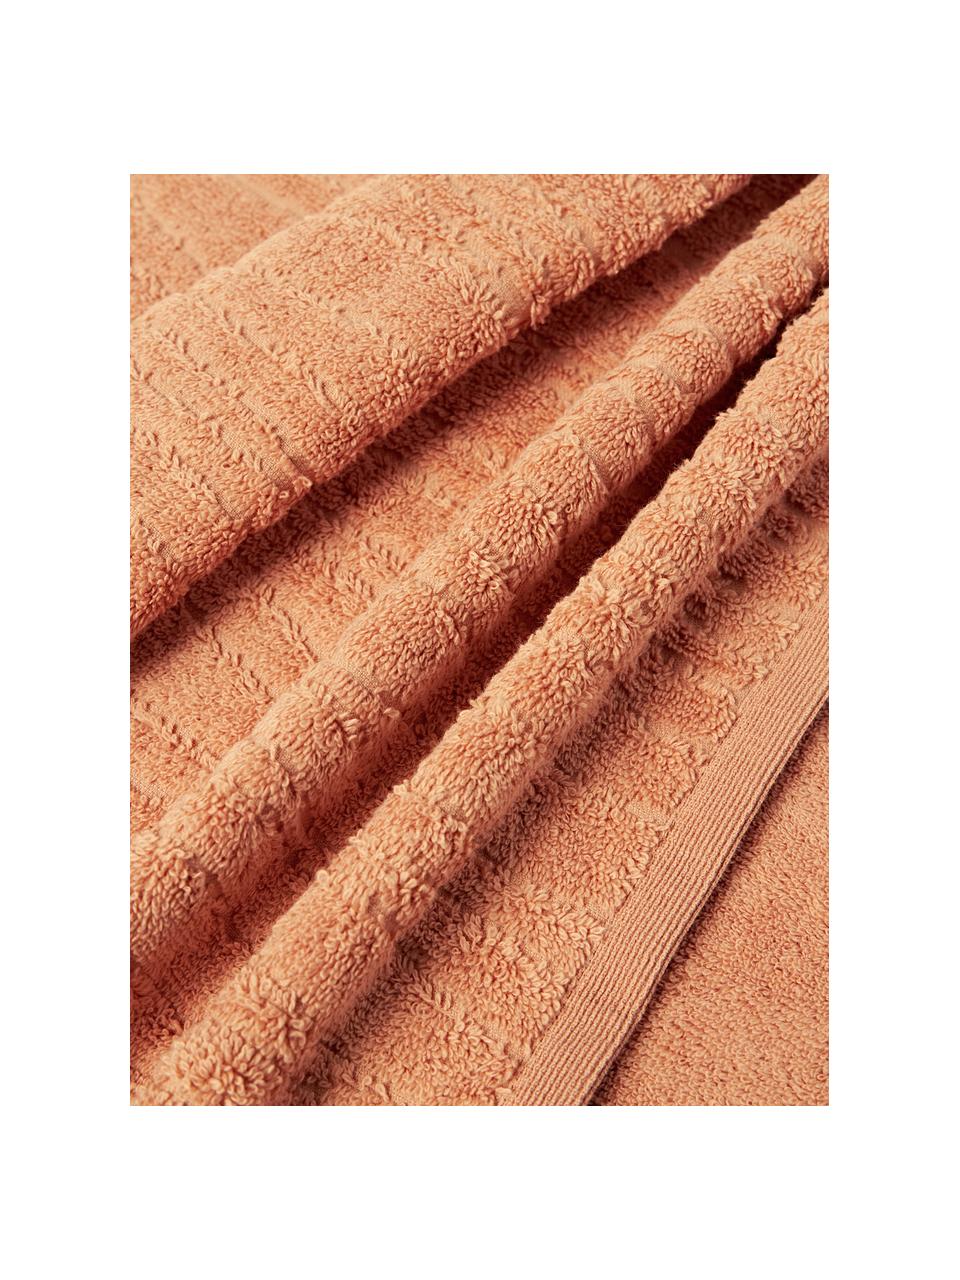 Baumwoll-Handtuch Audrina, in verschiedenen Grössen, Peach, Handtuch, B 50 x L 100 cm, 2 Stück